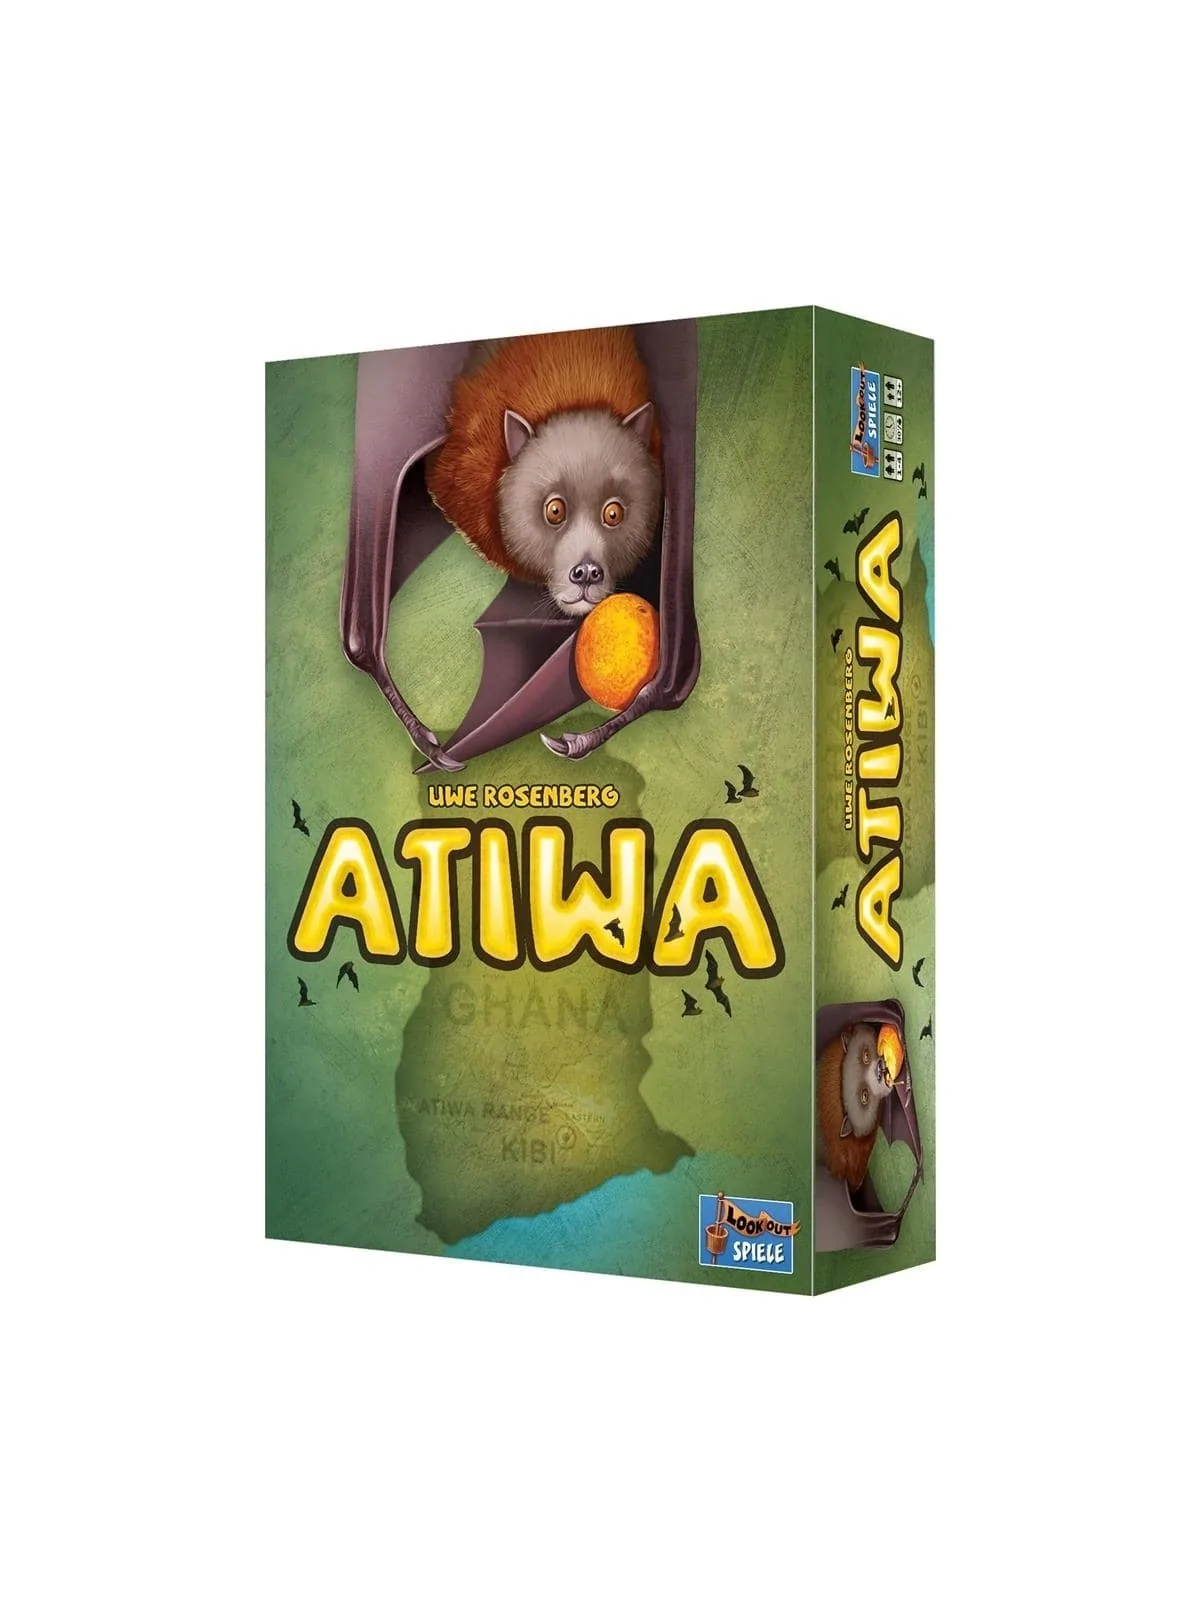 Comprar Atiwa barato al mejor precio 50,36 € de Lookout Games